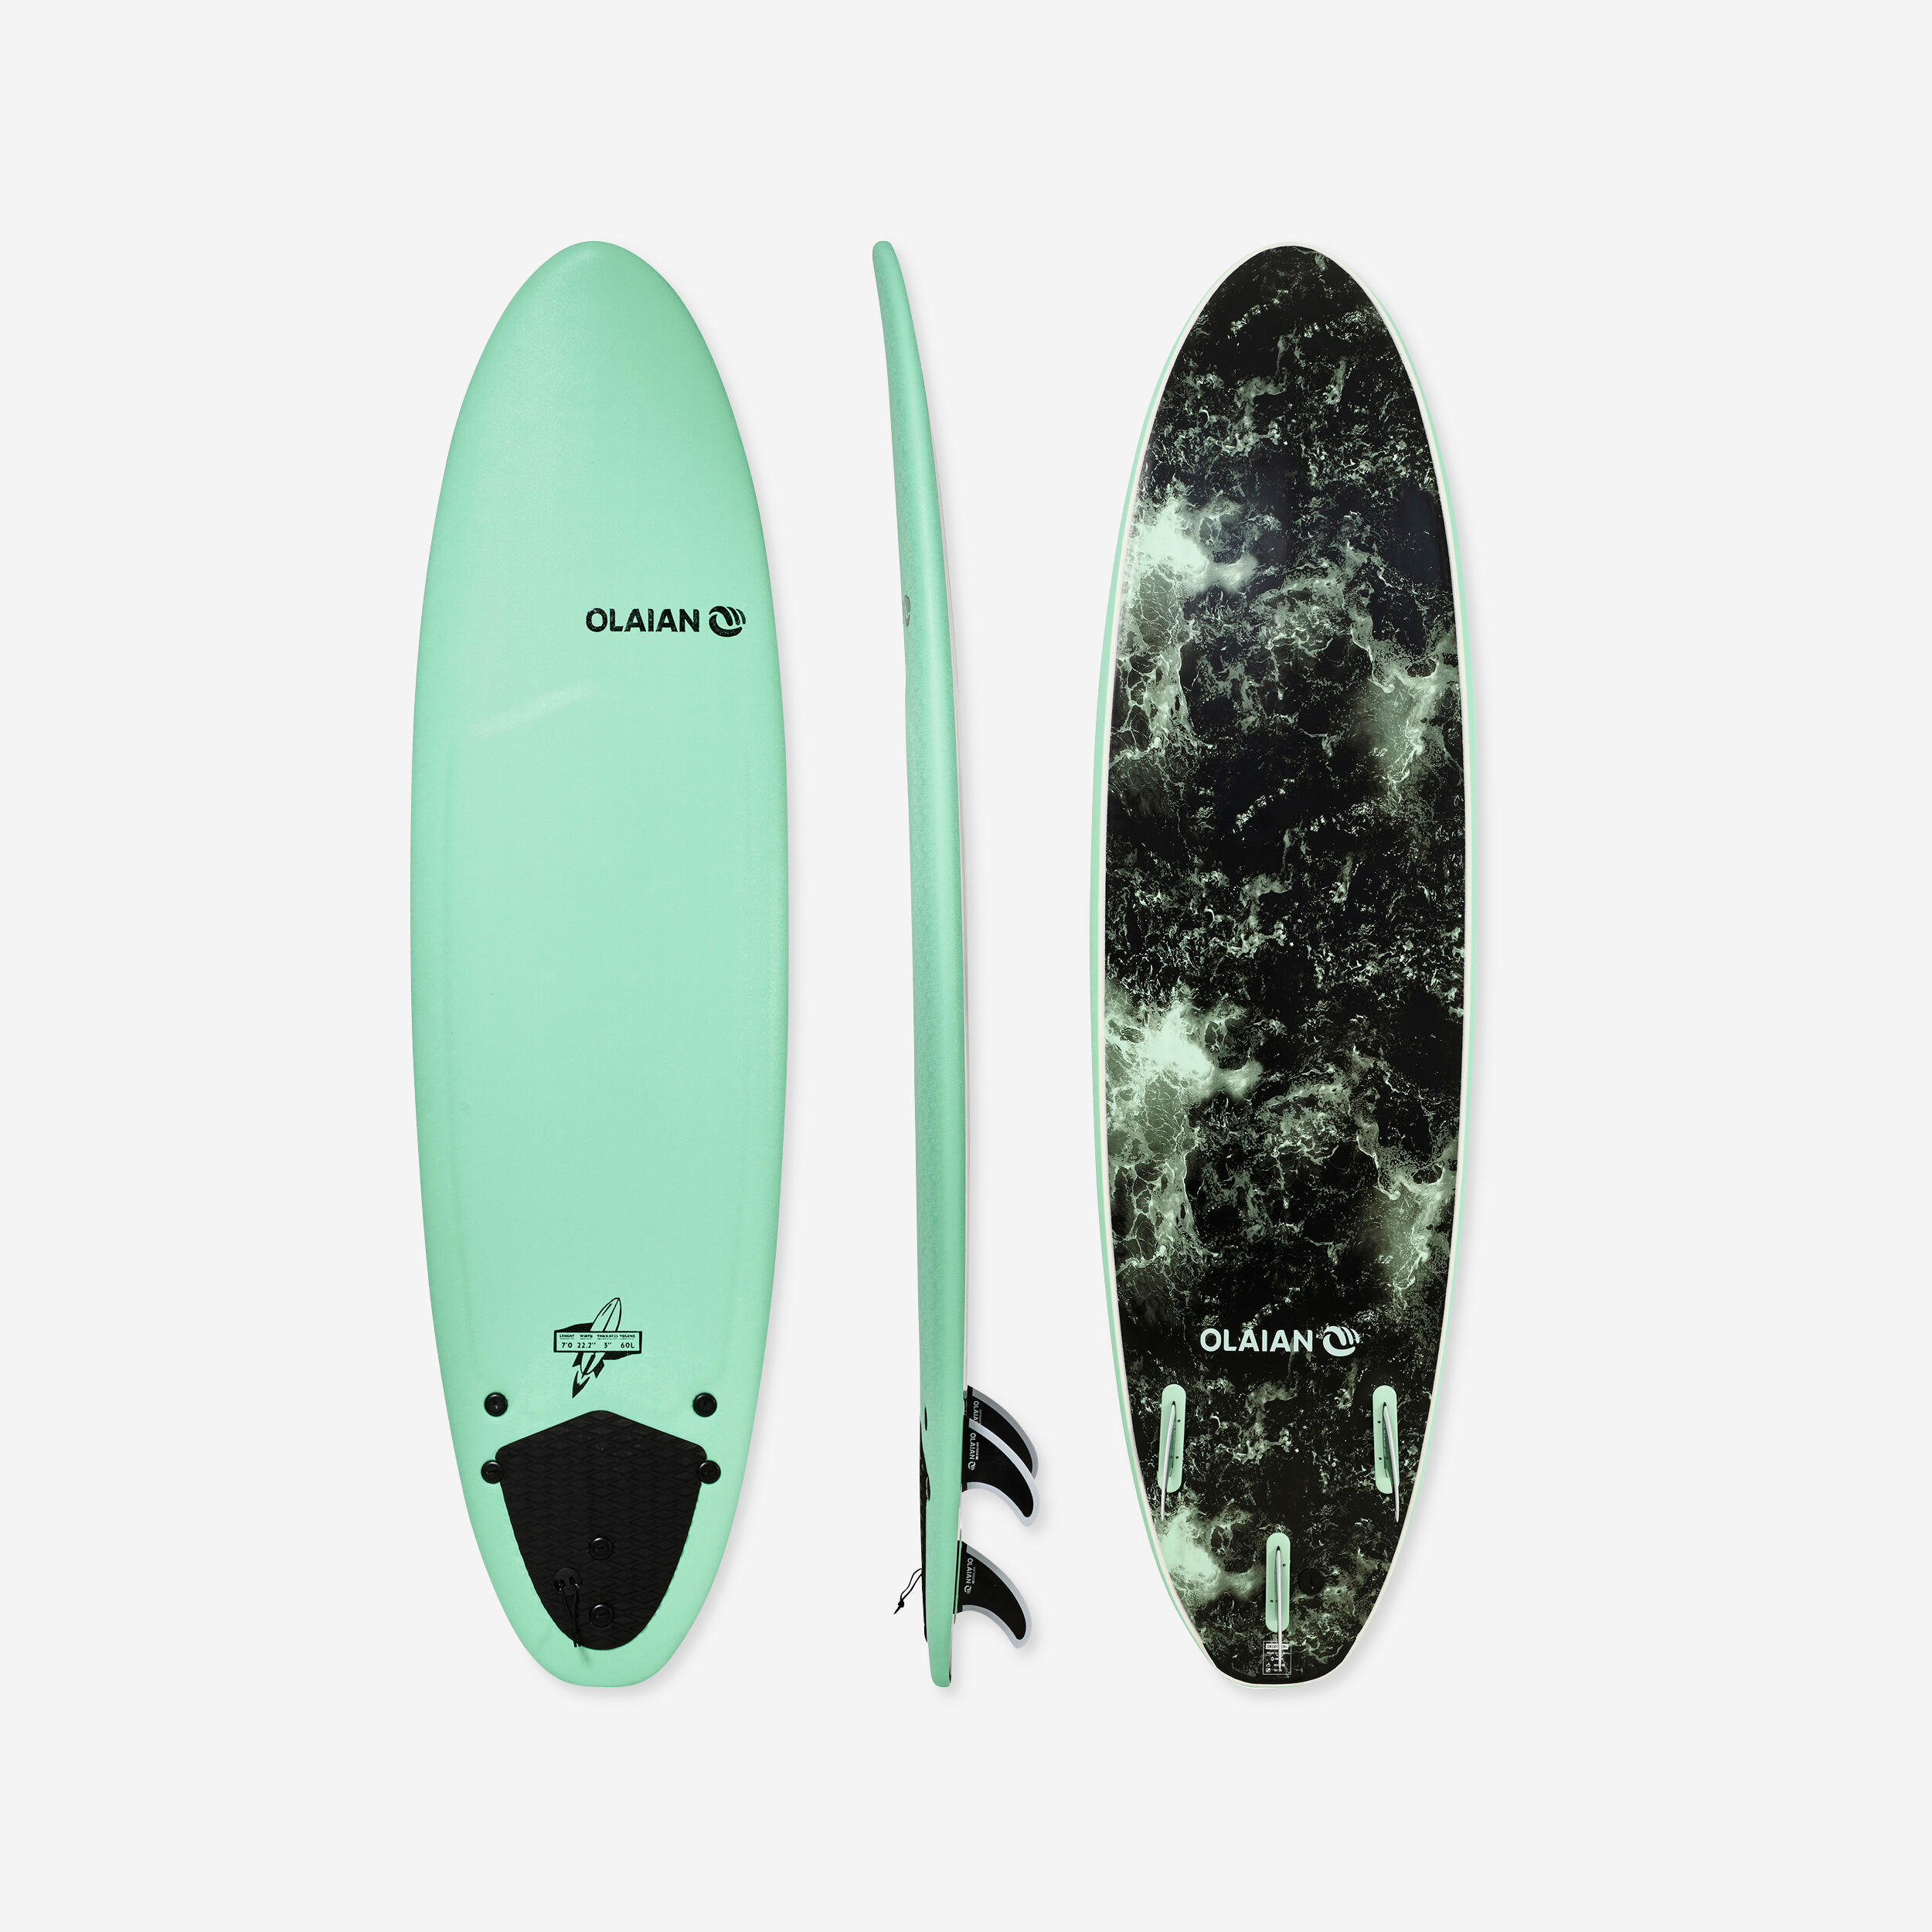 ad asciugatura rapida accessori per sport acquatici per tavola da surf con copertura protettiva Copertura morbida per tavola da surf Faderr 